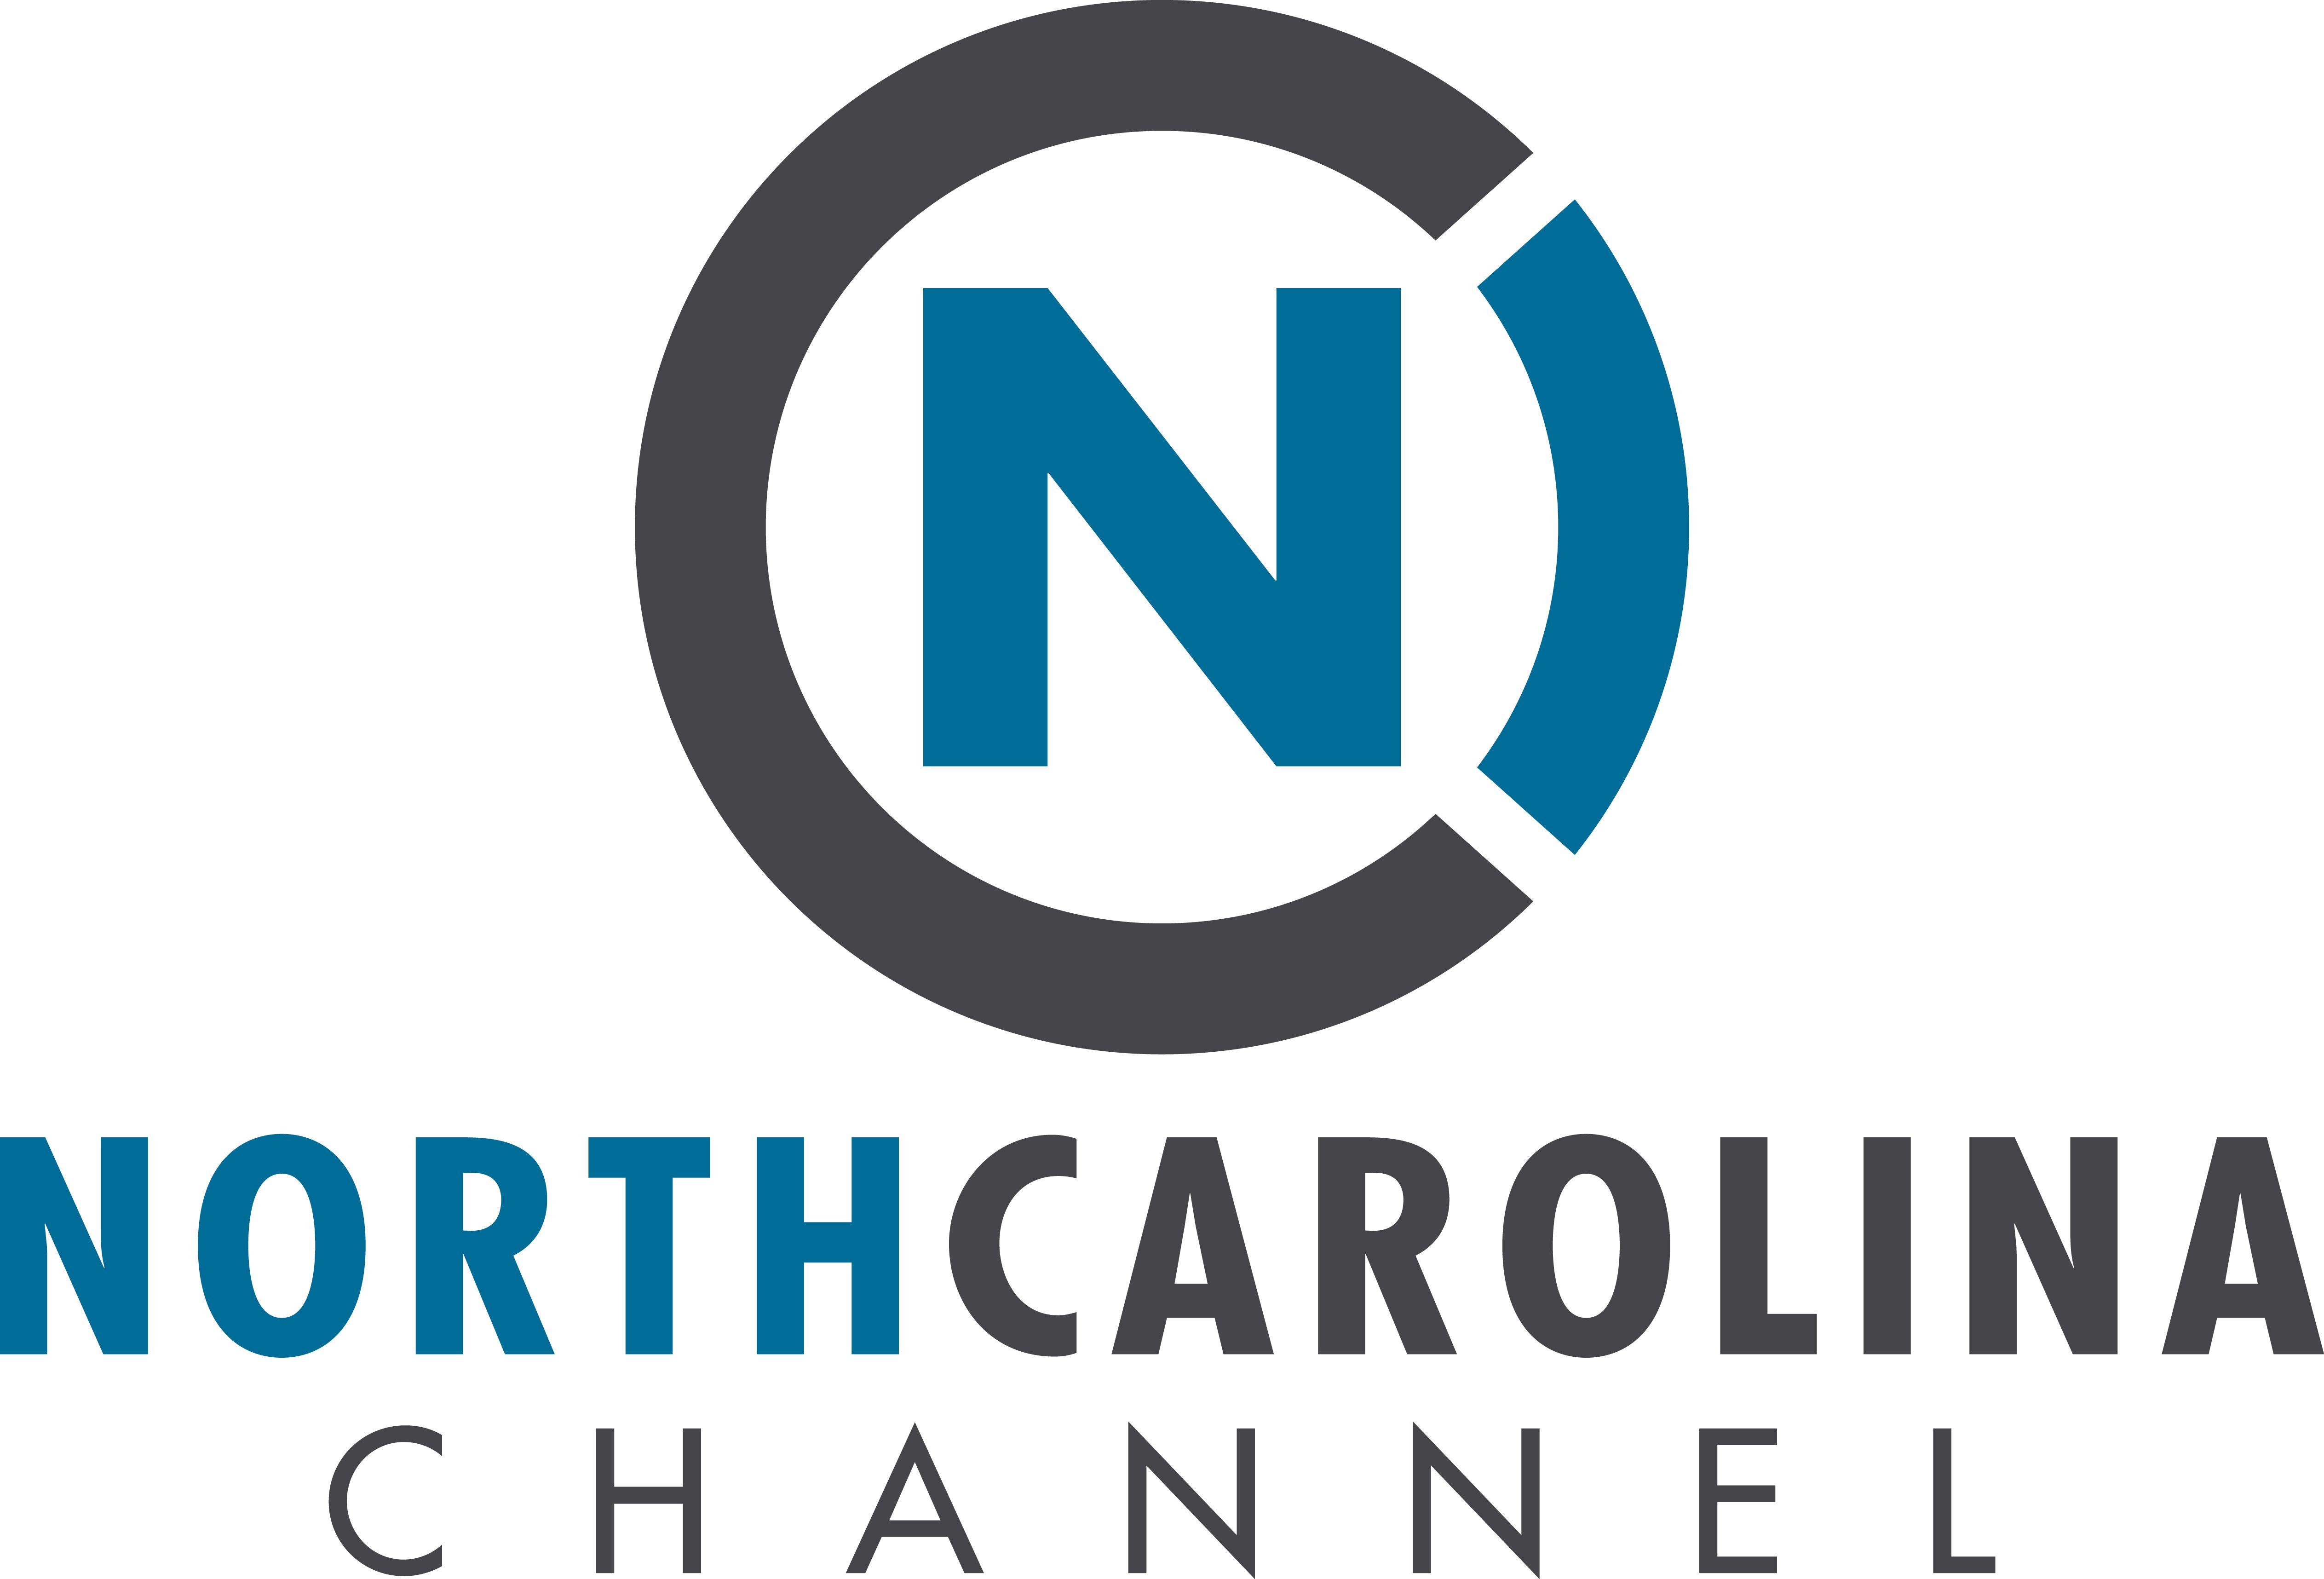 UNC-TV Logo - Pressroom